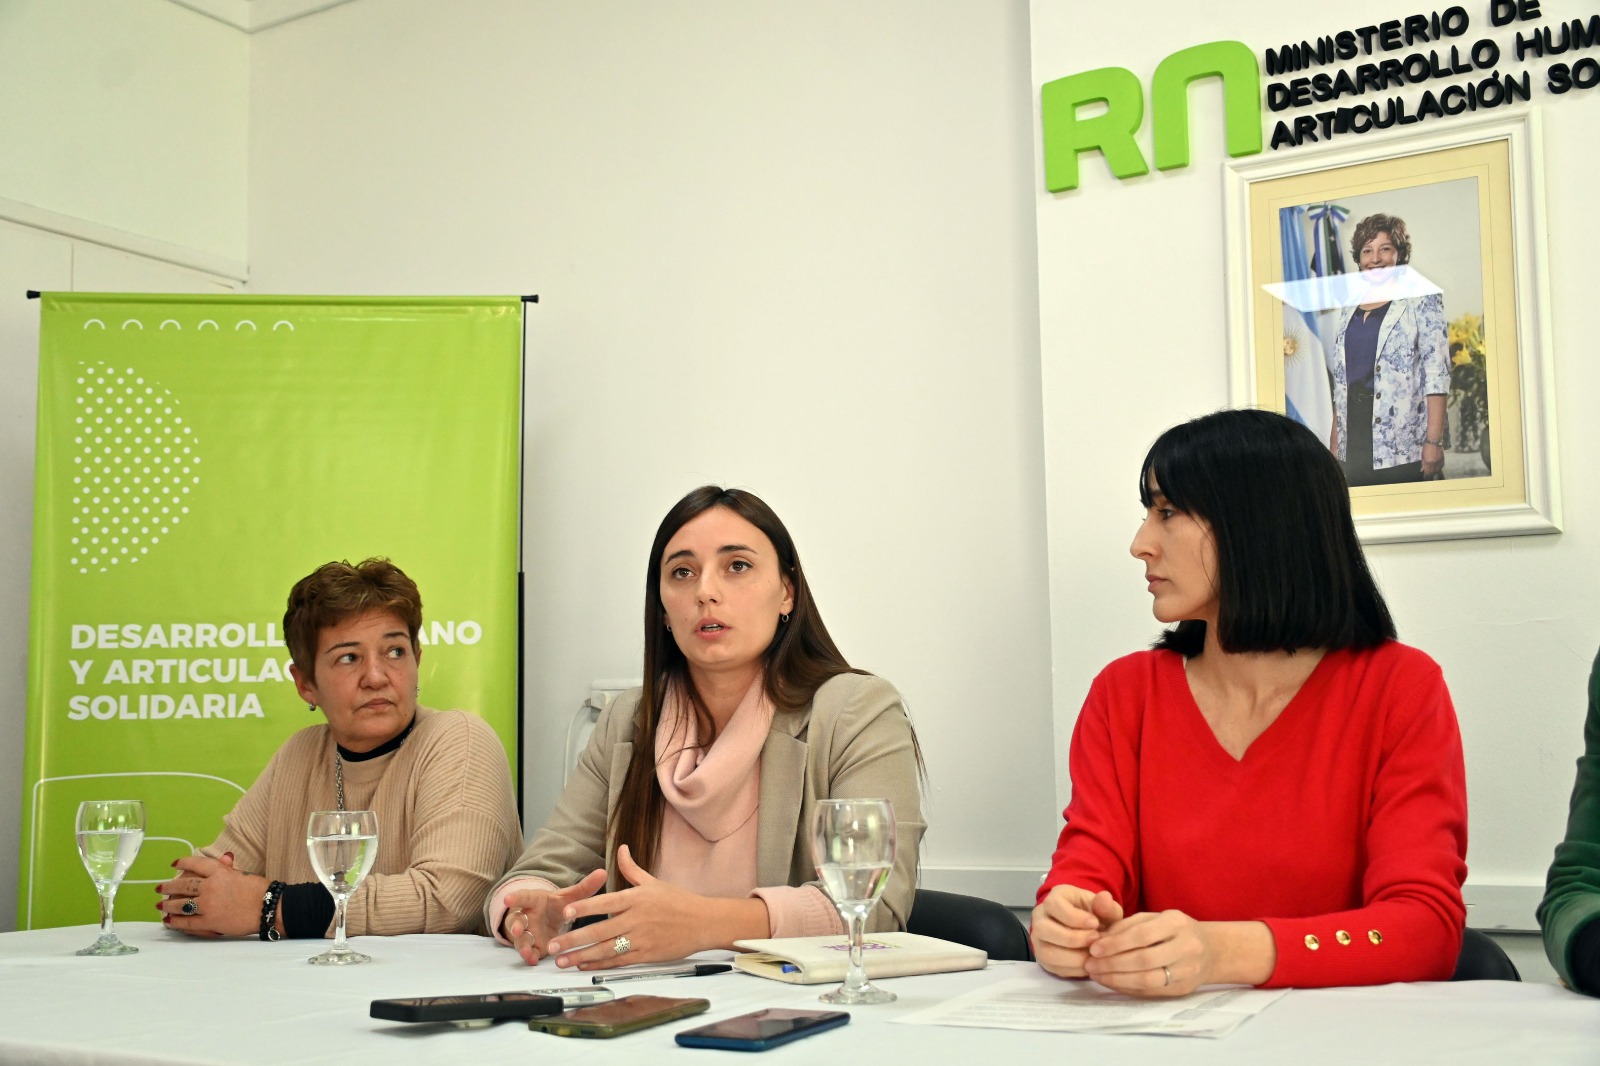 La ministra de Desarrollo Humano, Luciana De La Fuente anunció el programa, acompañada por su equipo. Foto: Marcelo Ochoa.